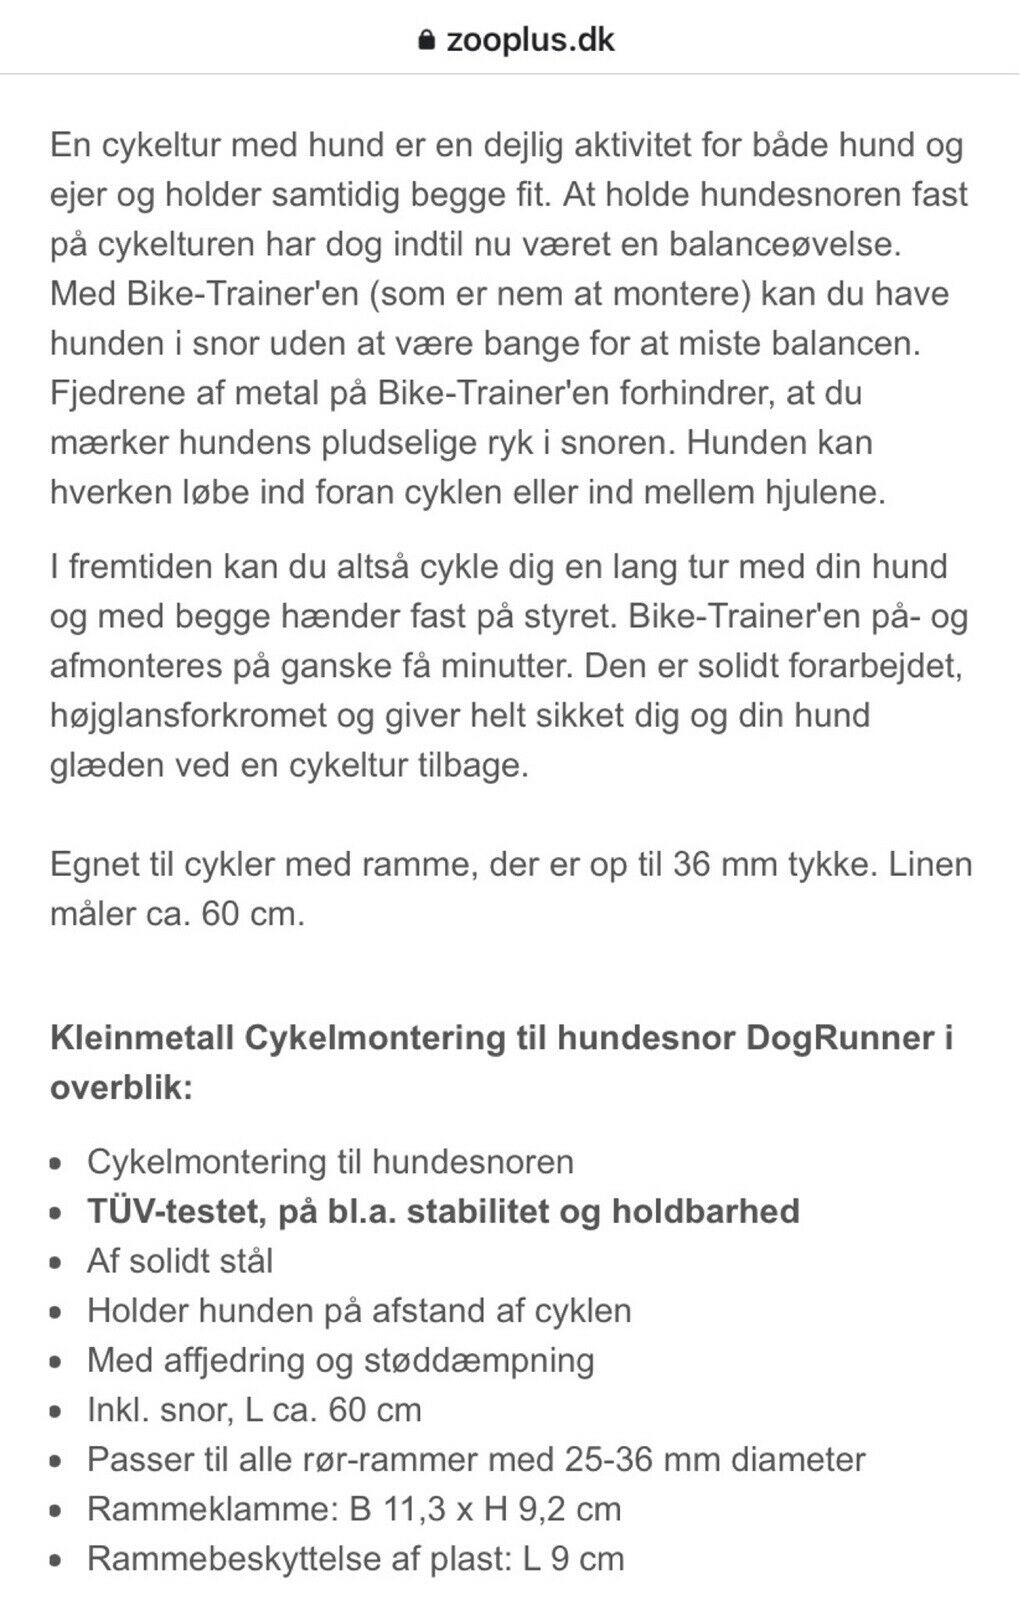 ørn Flourish Smelte Andet, Bike-Trainer. Cykelmontering til hundesnor – dba.dk – Køb og Salg af  Nyt og Brugt